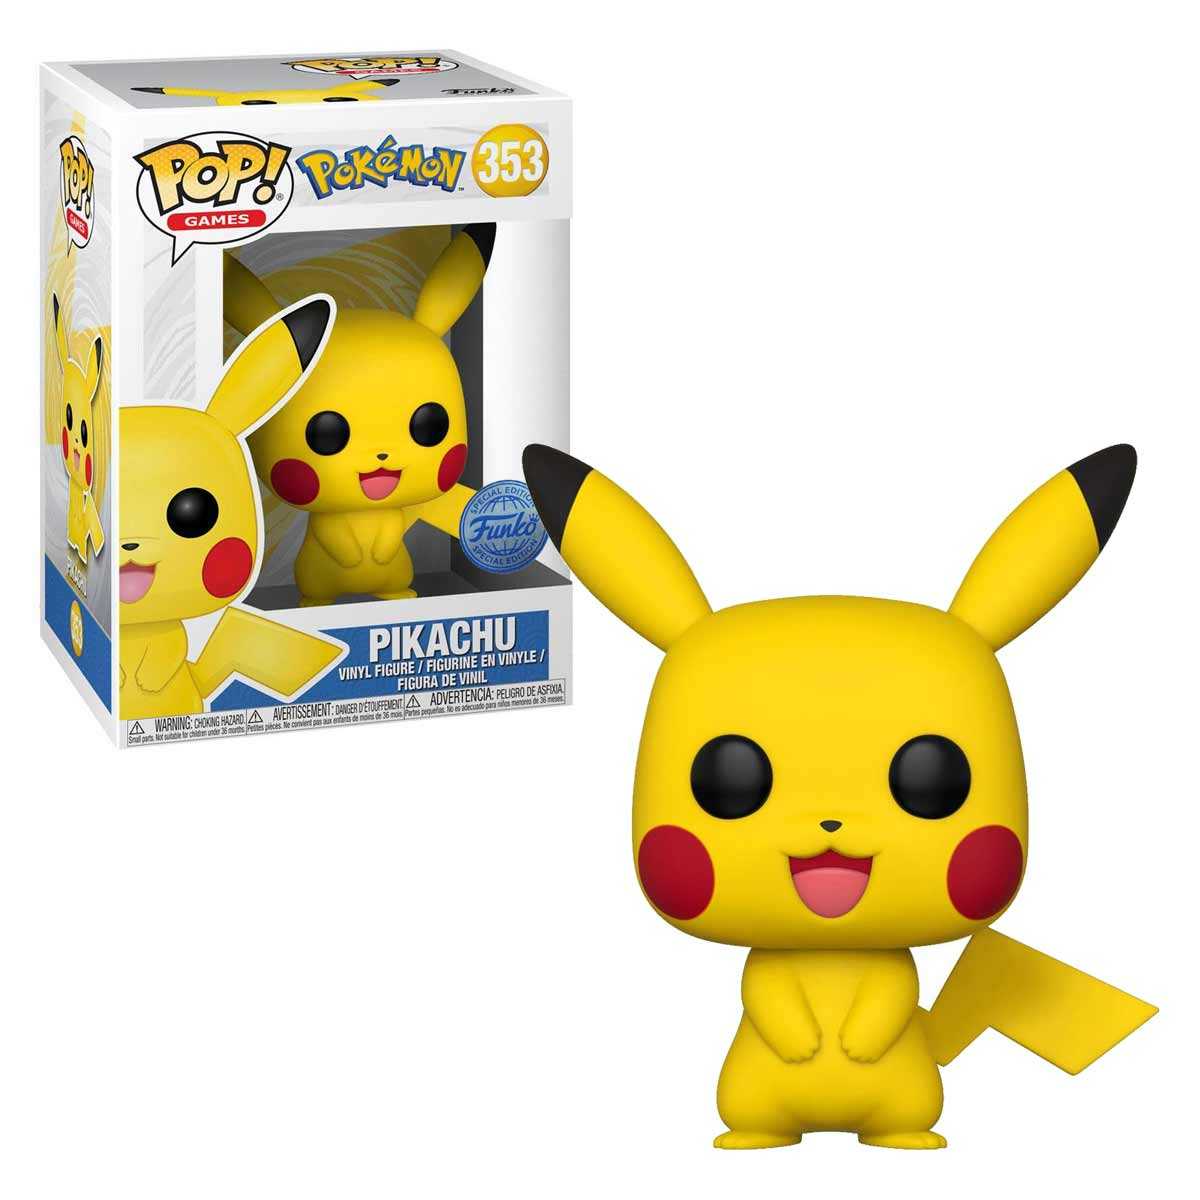 POP! Pikachu 353 Pokémon...